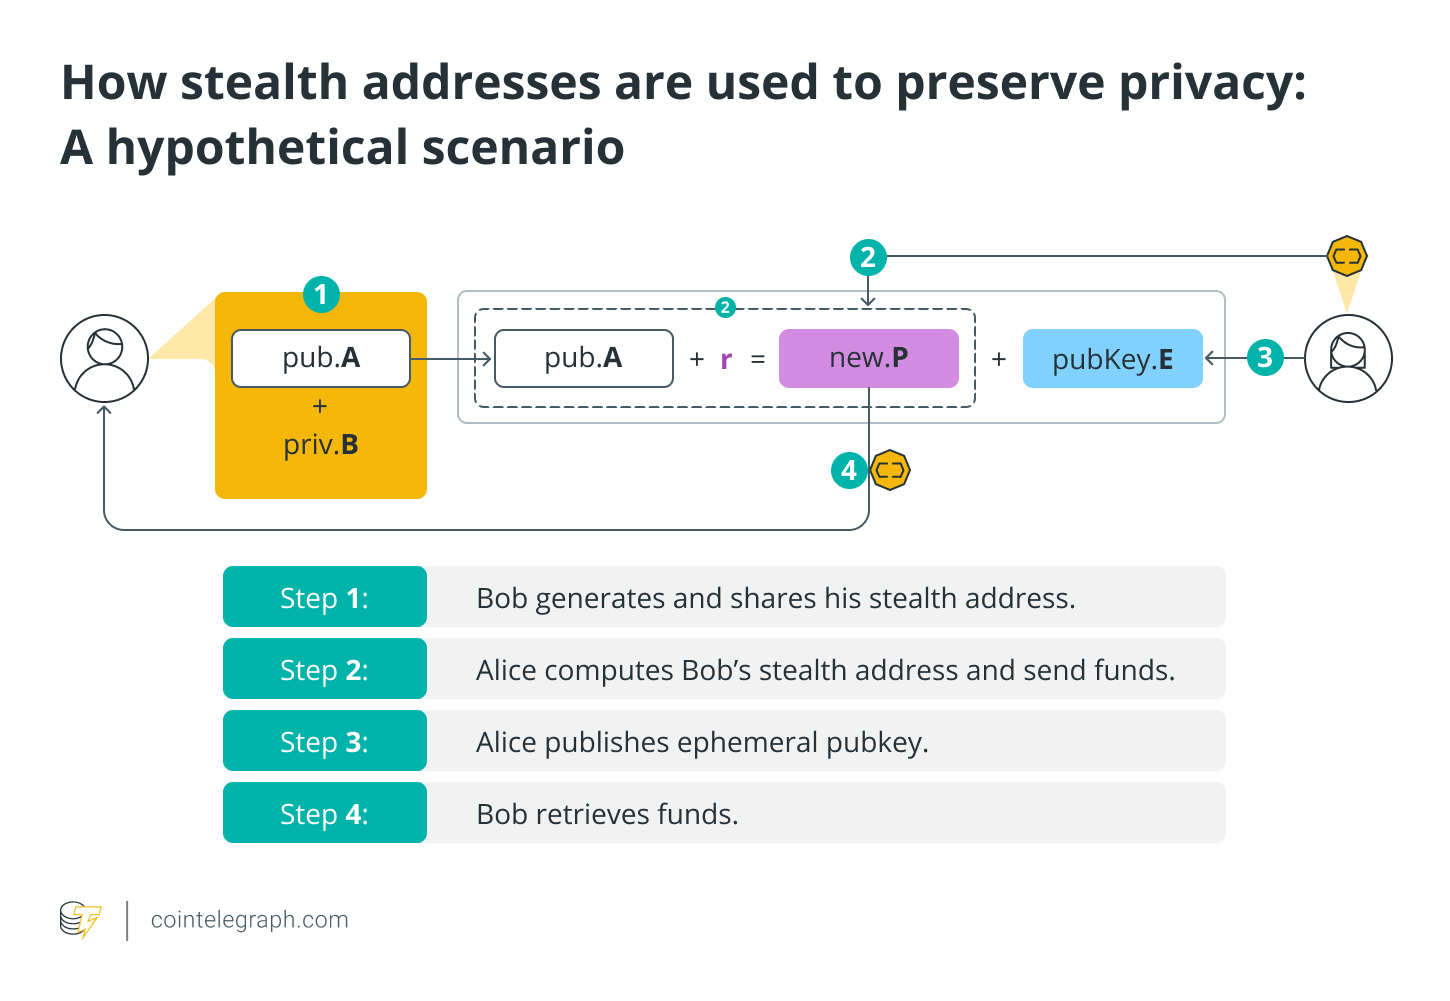 Как скрытые адреса используются для сохранения конфиденциальности: гипотетический сценарий